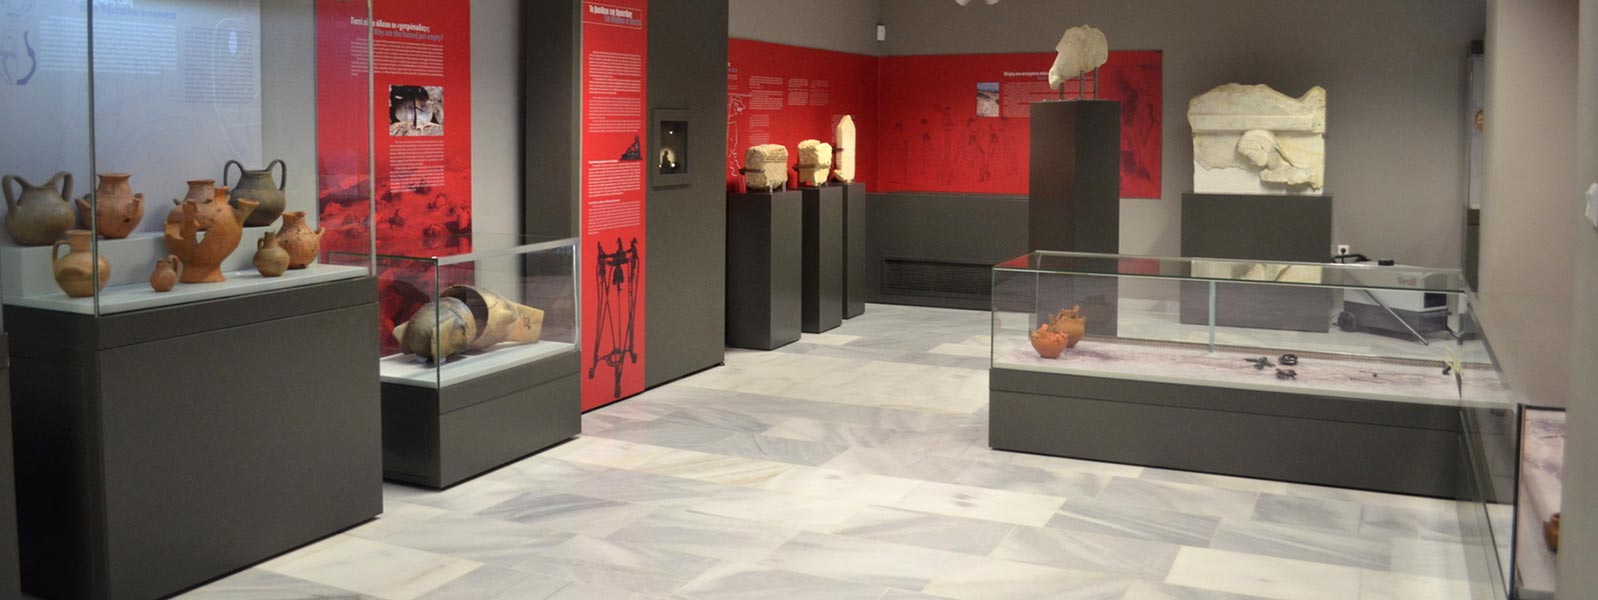 Argos Orestiko Archaeologisches Museum 0002